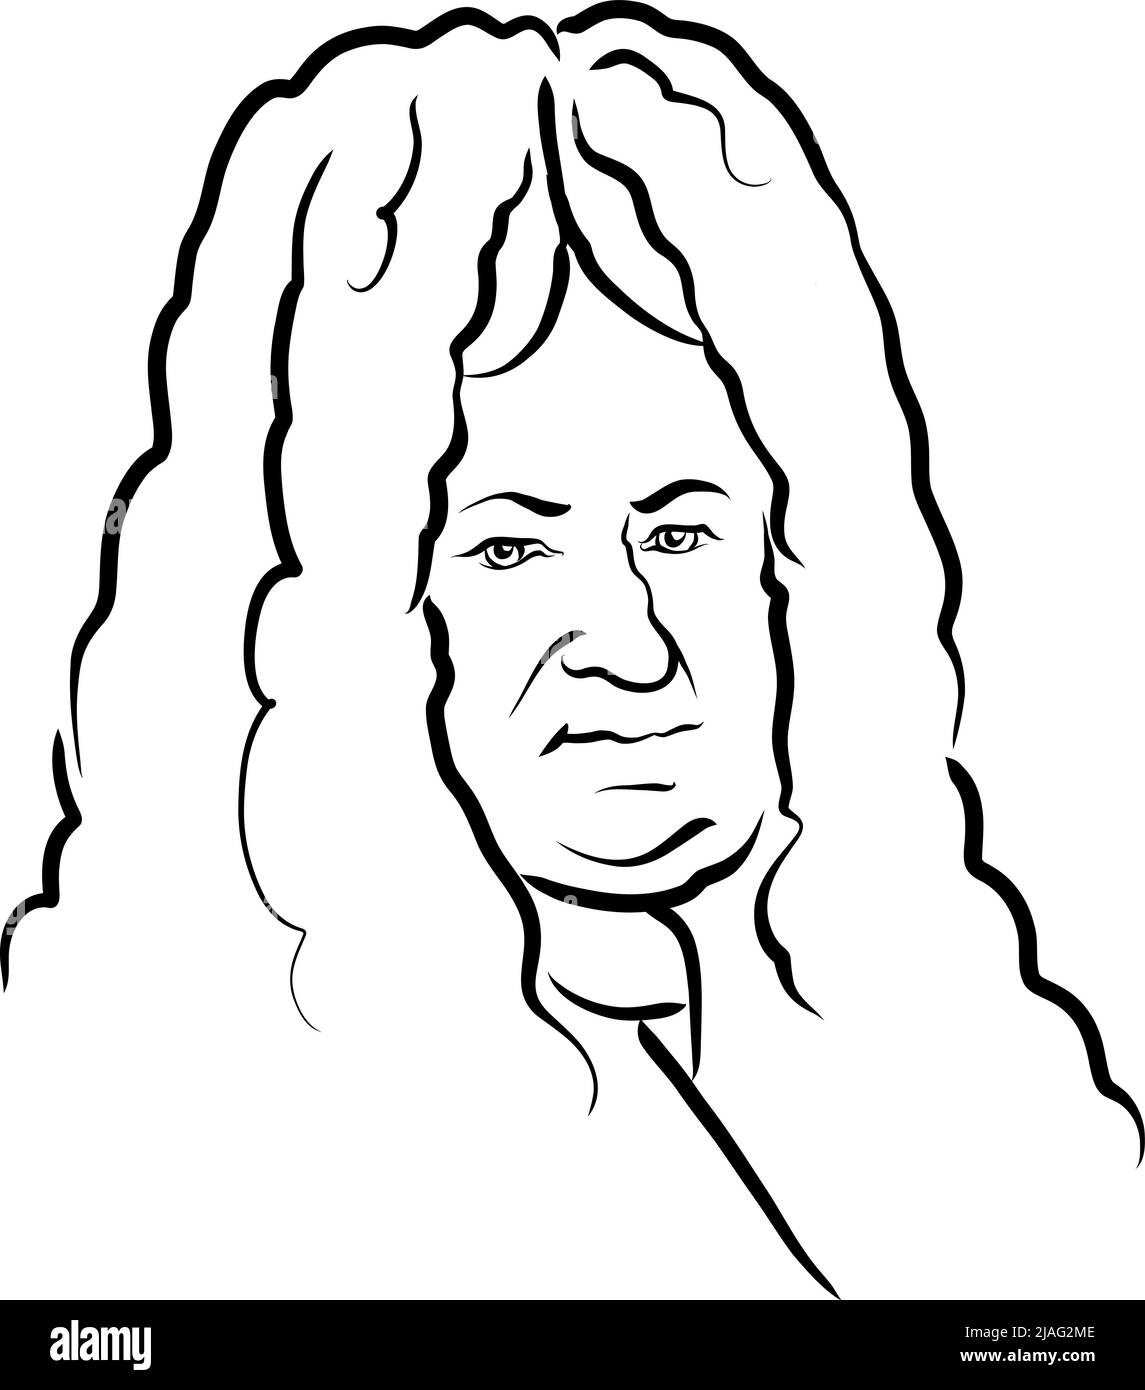 Gottfried Wilhelm Leibniz Moderne Vektorzeichnung. Handgezeichnete Skizze des Künstlers Knut Hebstreit. Zeichnung für die Verwendung bei jedem Marketingprojekt und für Stock Vektor